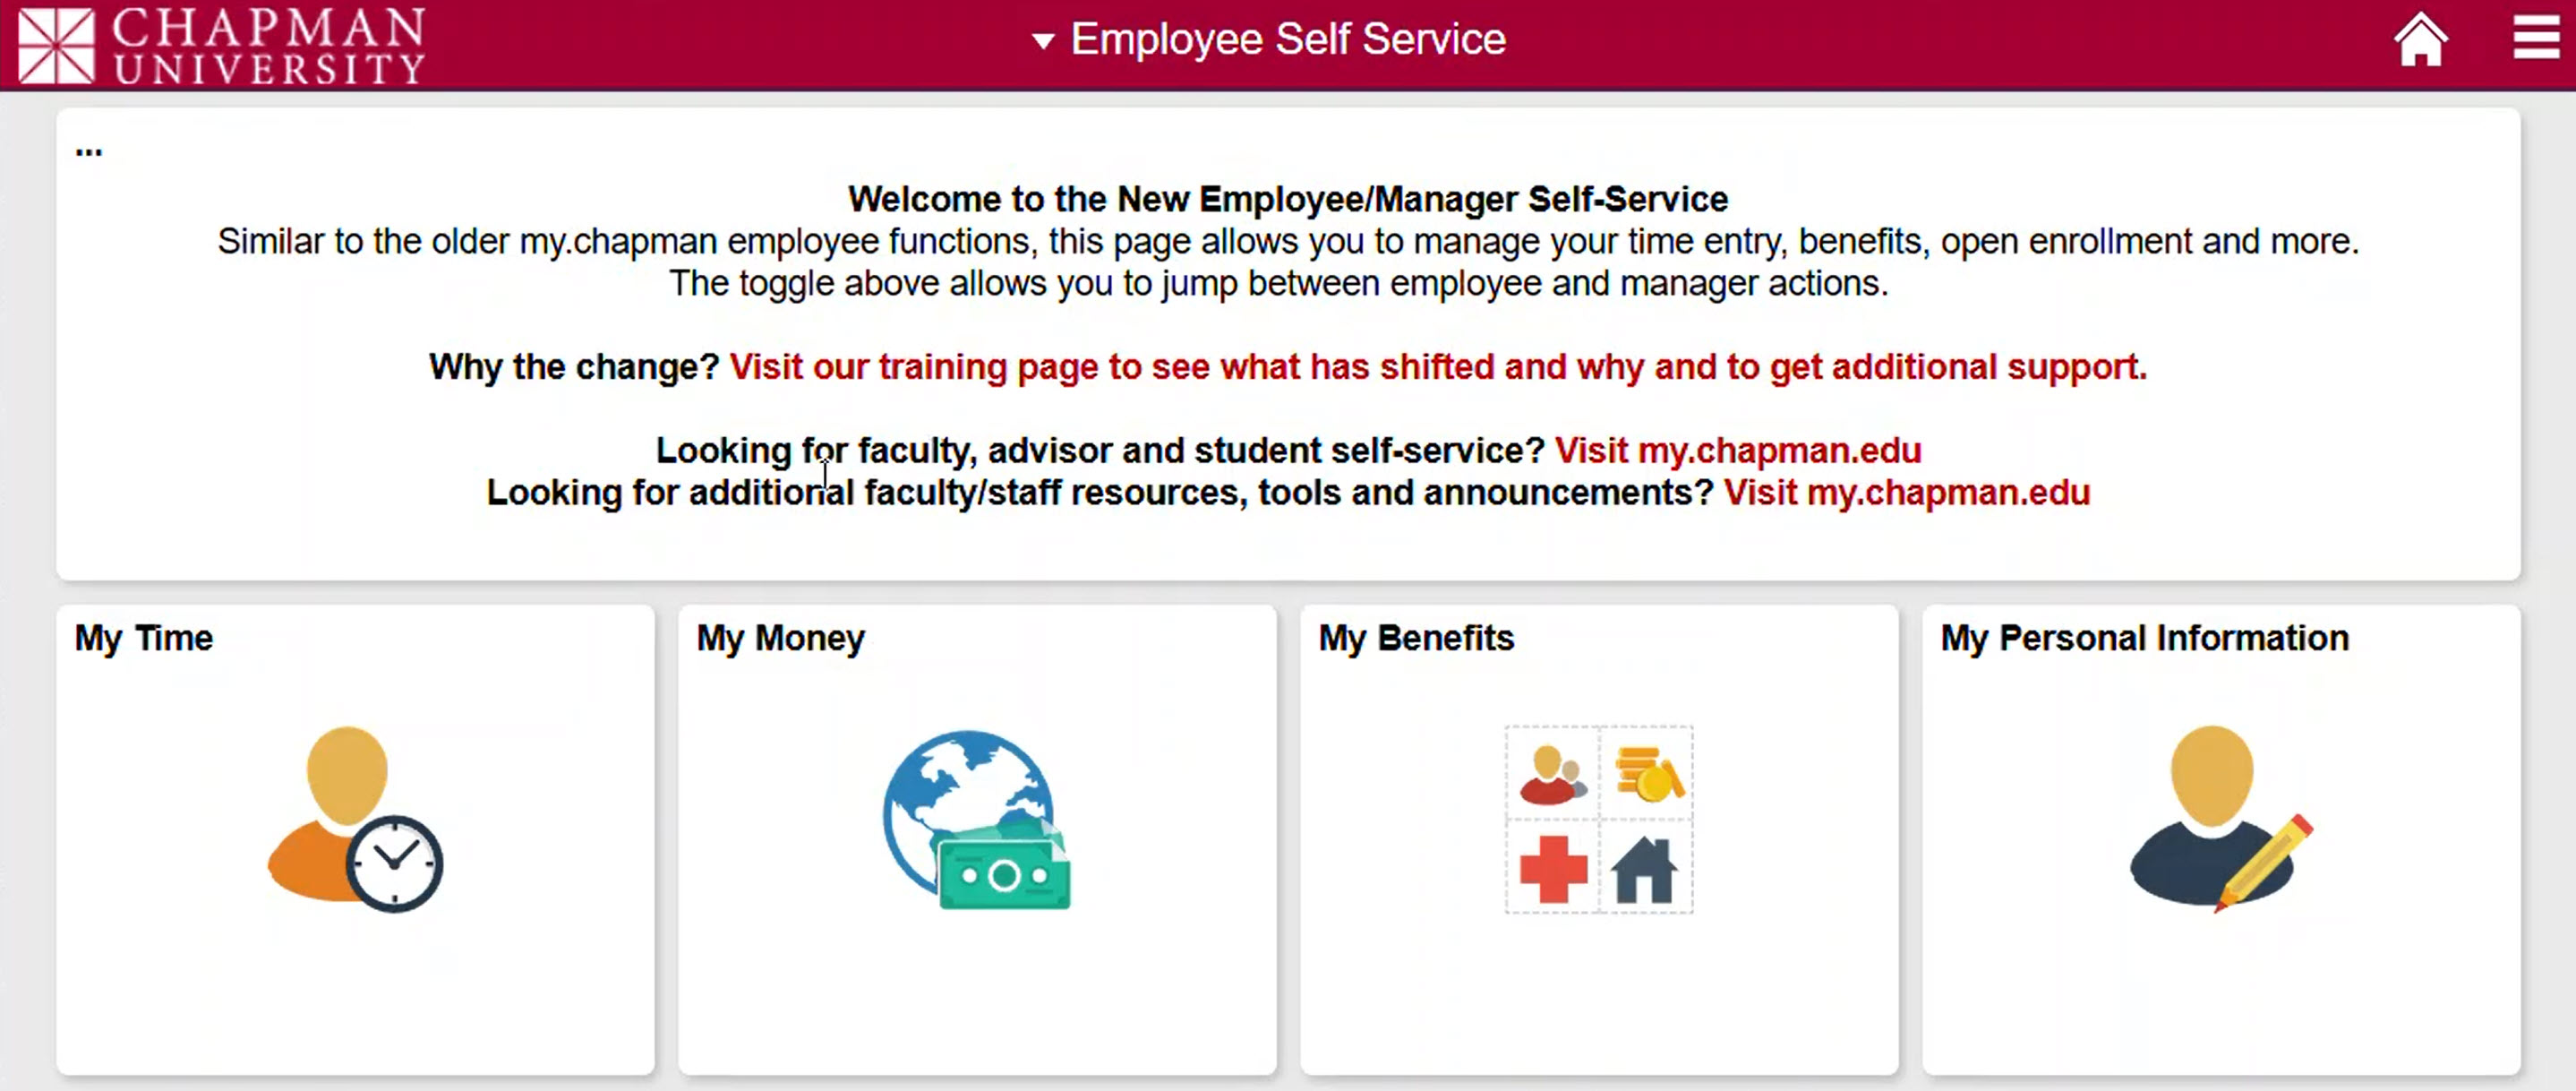 employee-self-service-menu.jpg